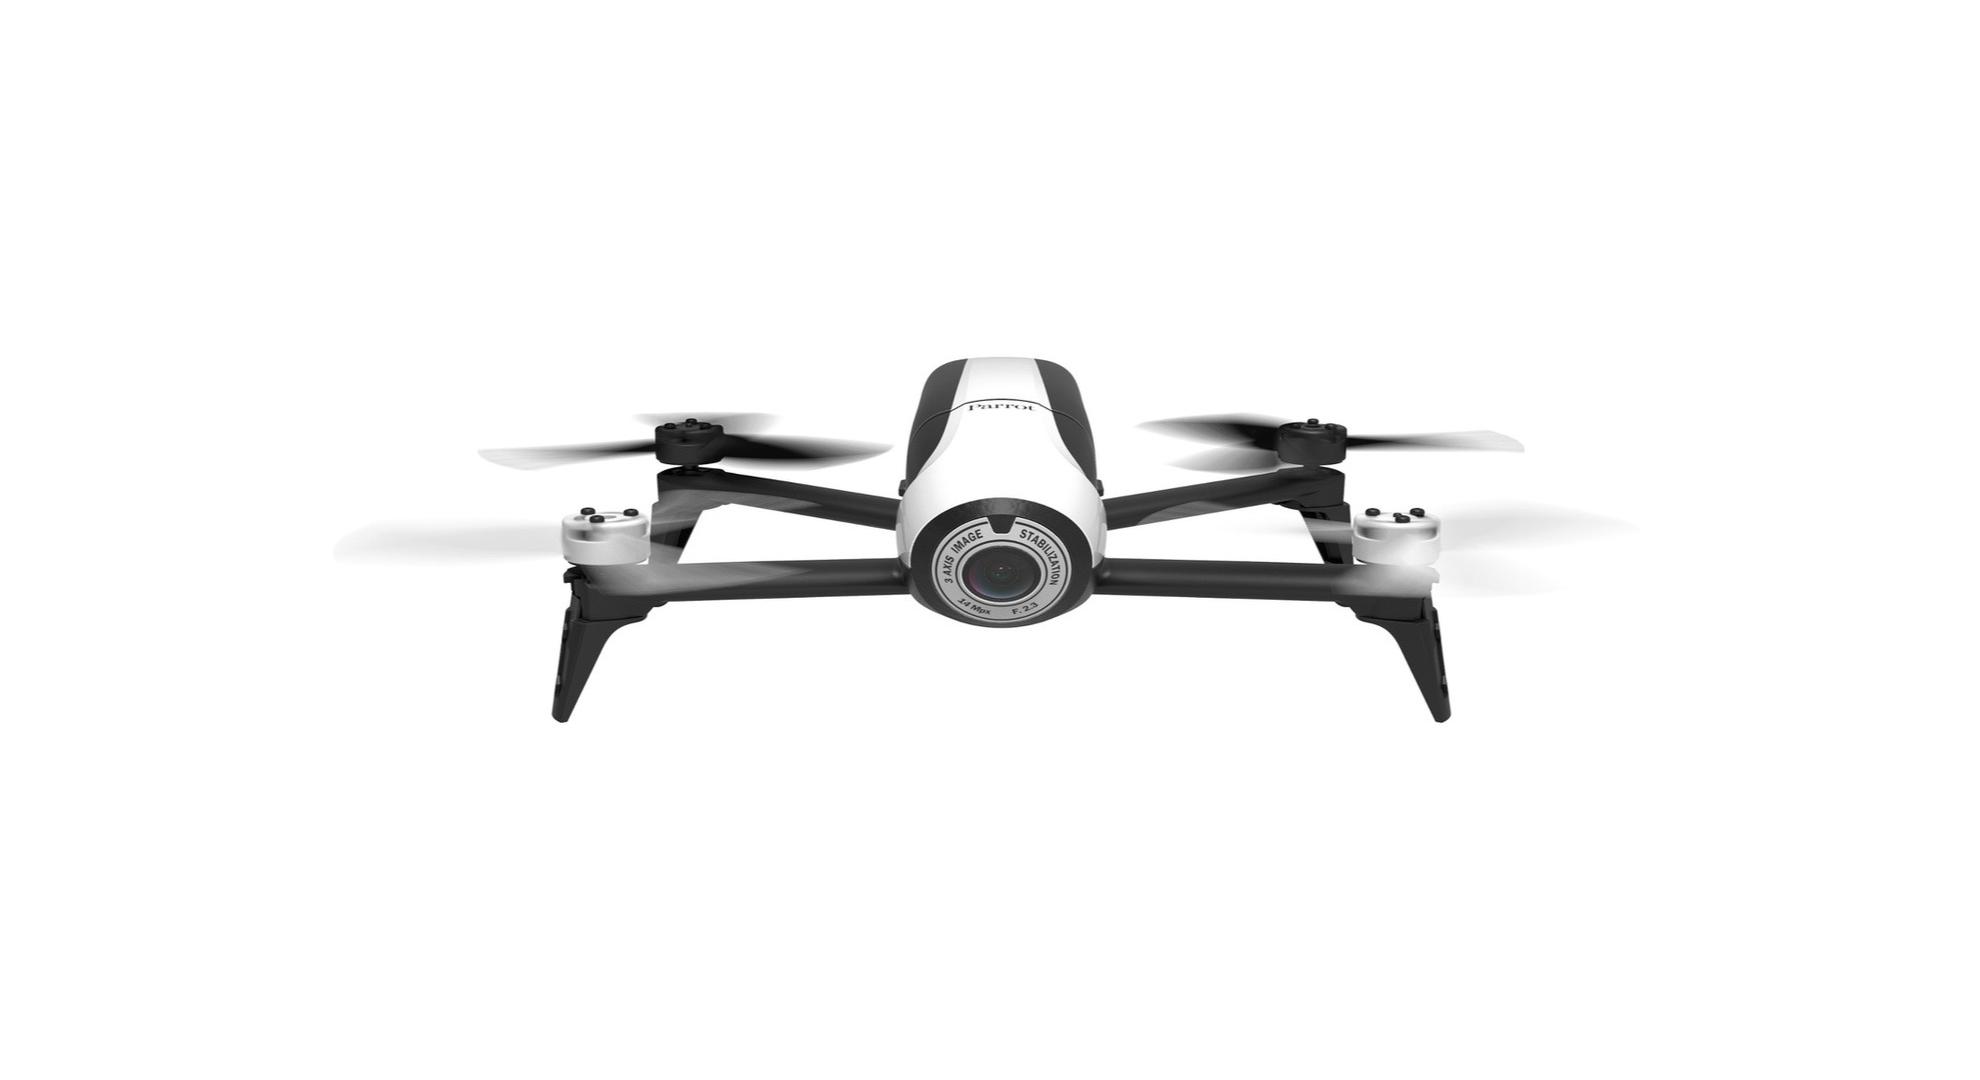 🔥 Soldes 2019 : le drone Parrot Bebop 2 descend à 269 euros au lieu de 499 euros